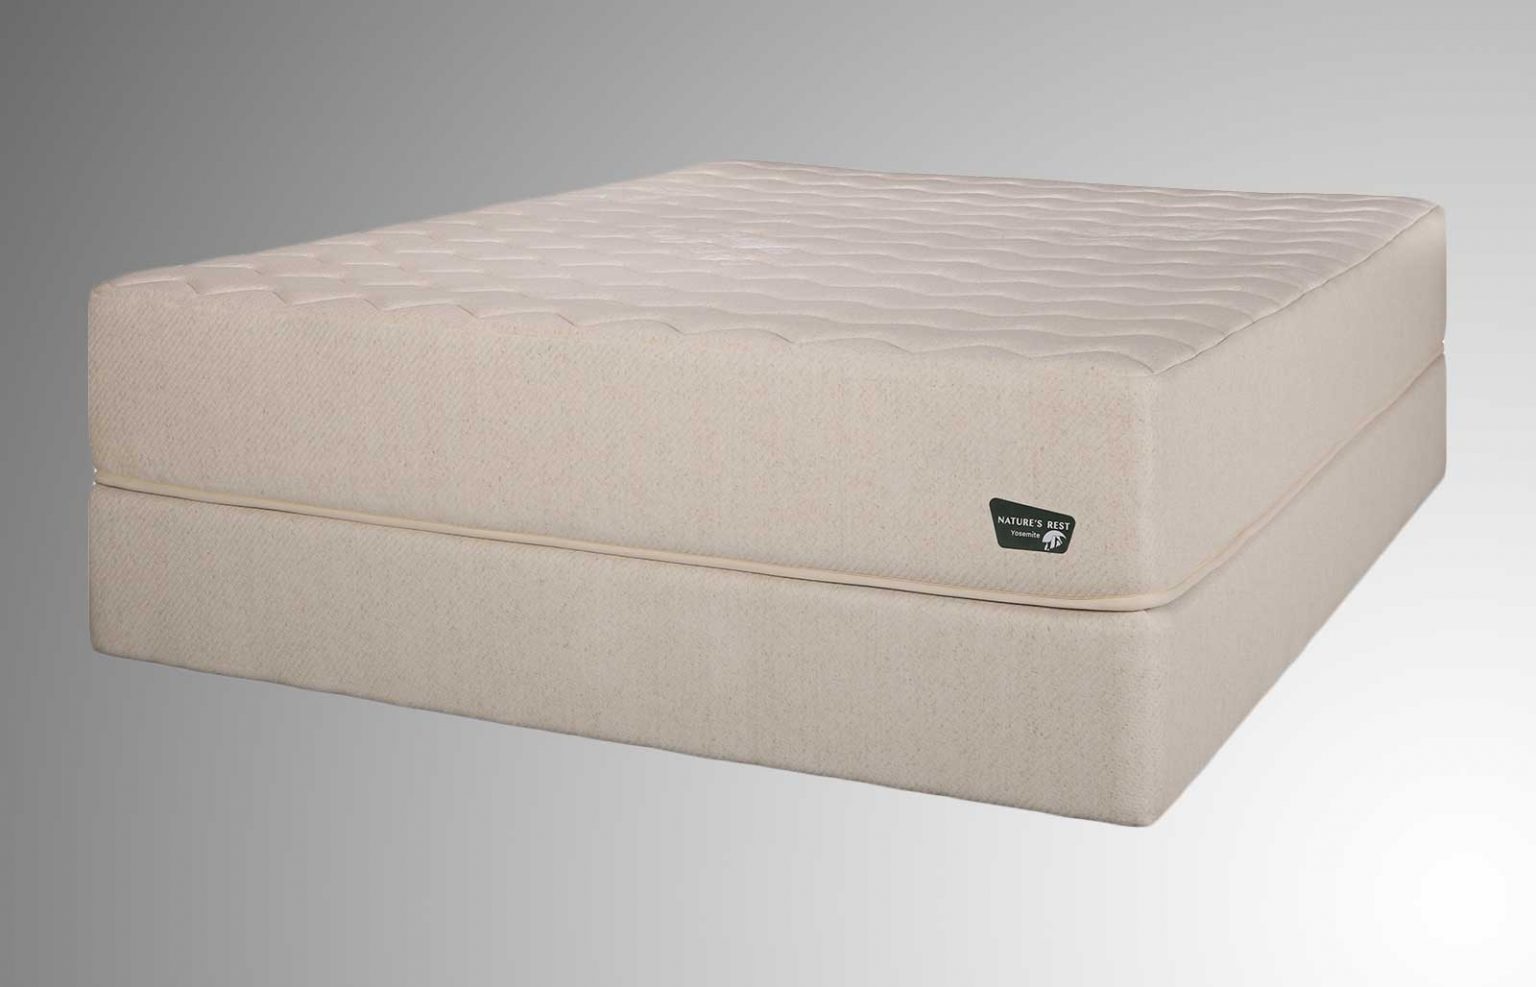 ultra firm mattress good for back